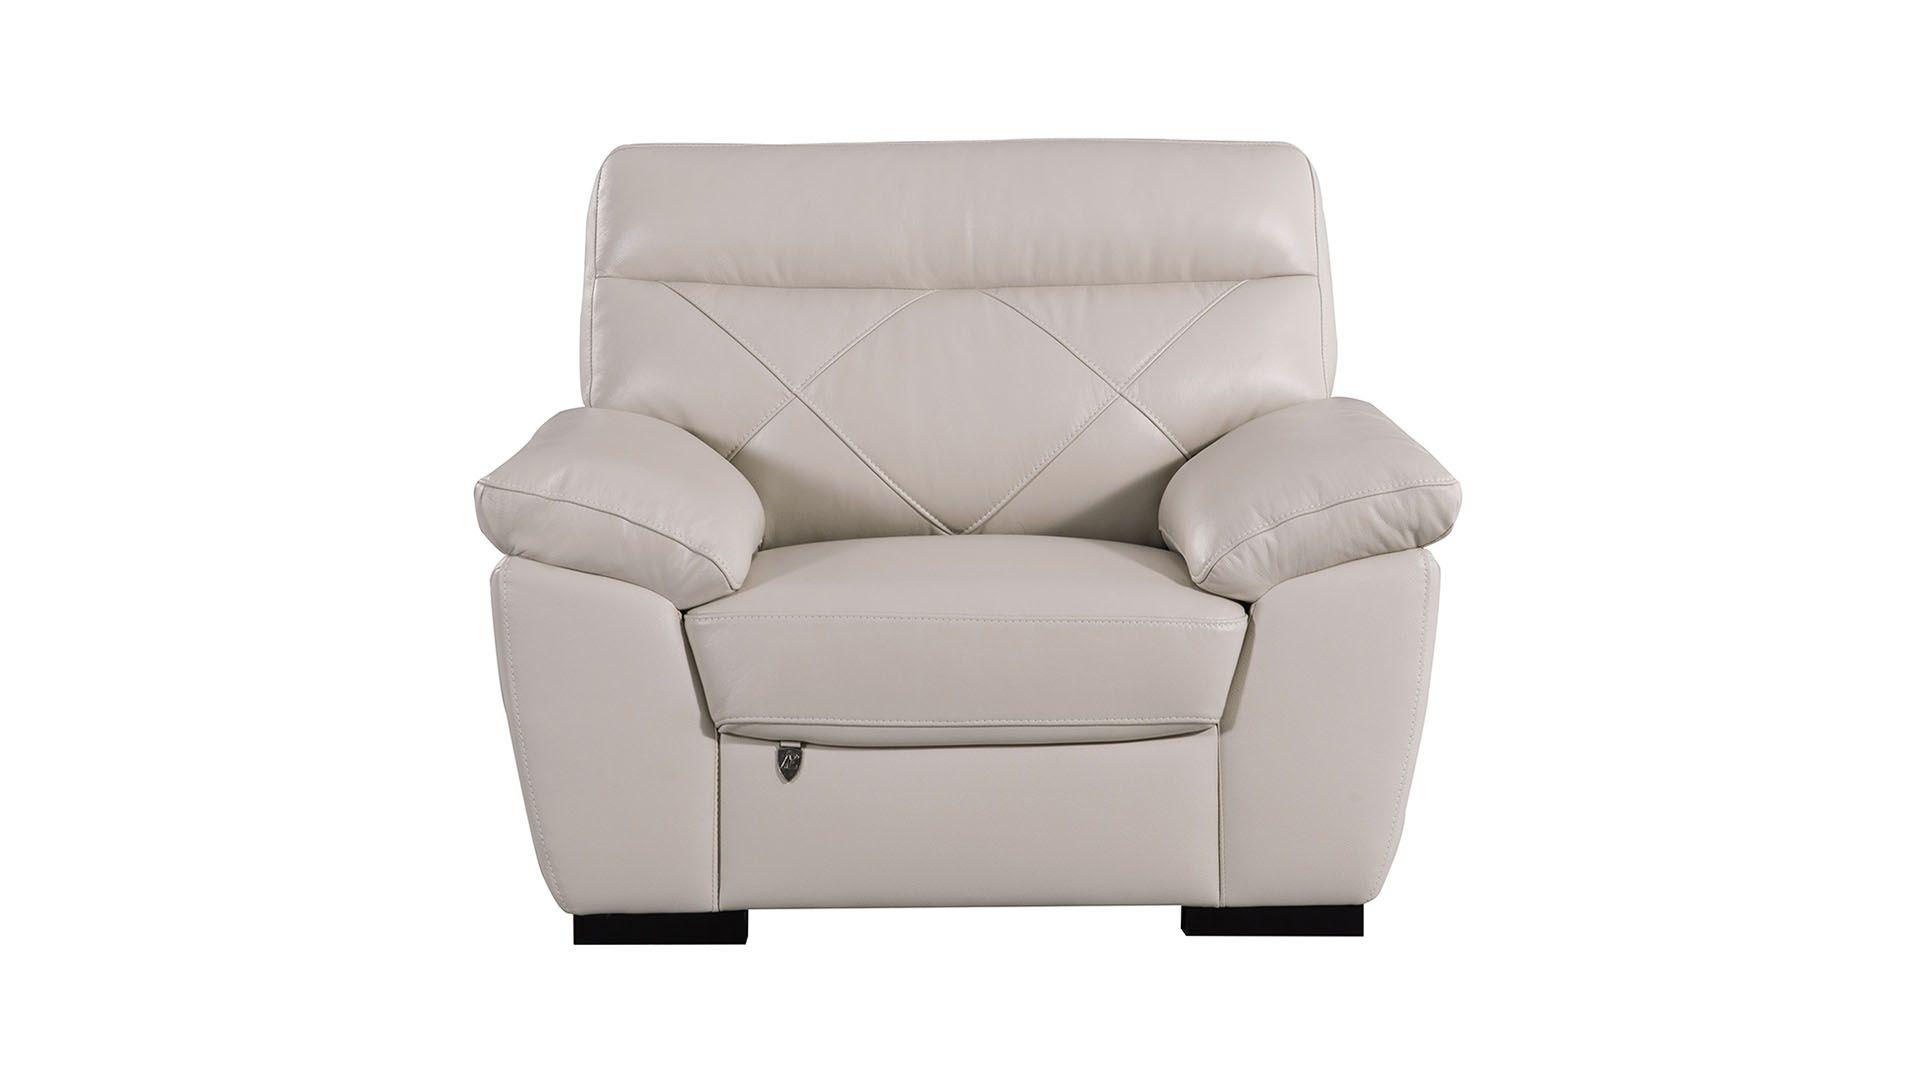 Contemporary, Modern Arm Chair EK081-LGEK081-LG-CHR EK081-LG-CHR in Light Gray Italian Leather